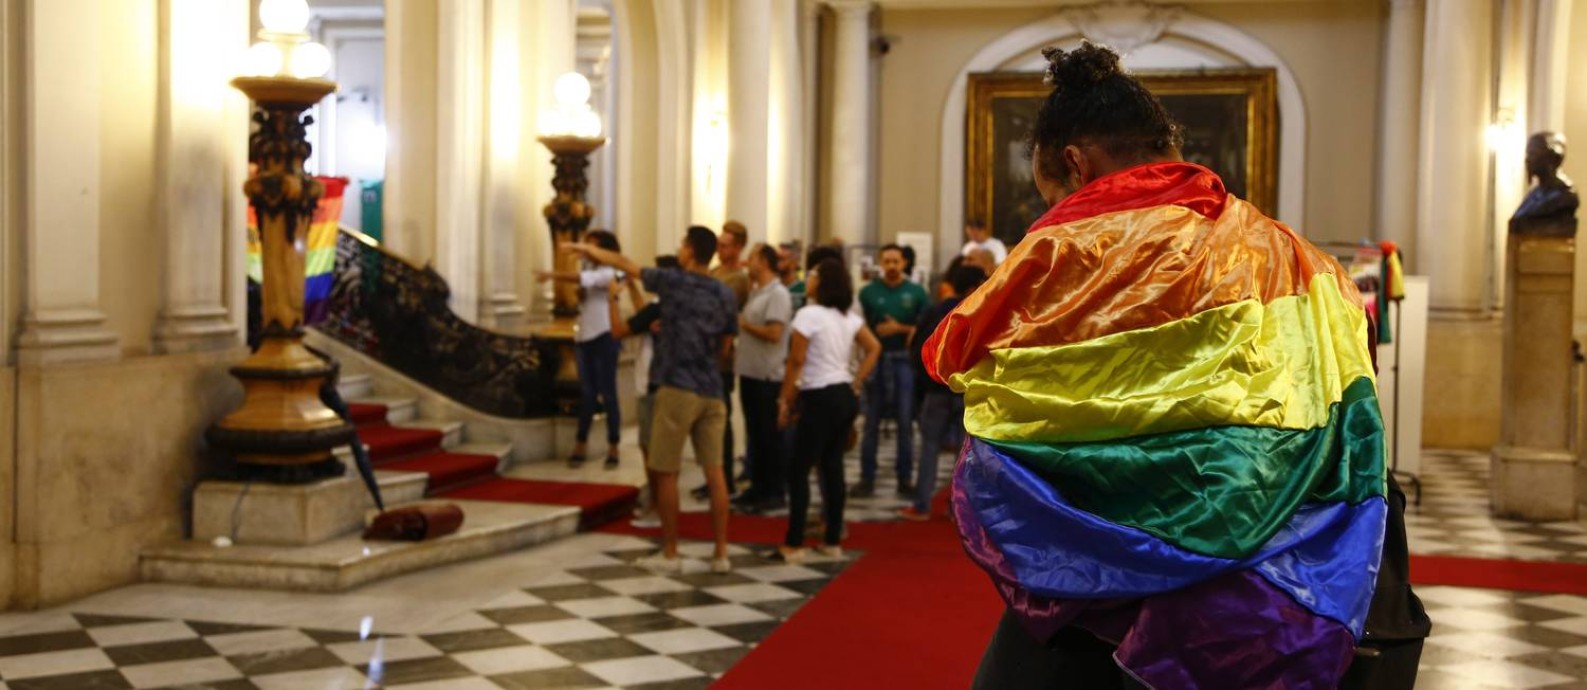 Solenidade em comemoração ao Dia Internacional contra a LGBTfobia Foto: Agência O Globo